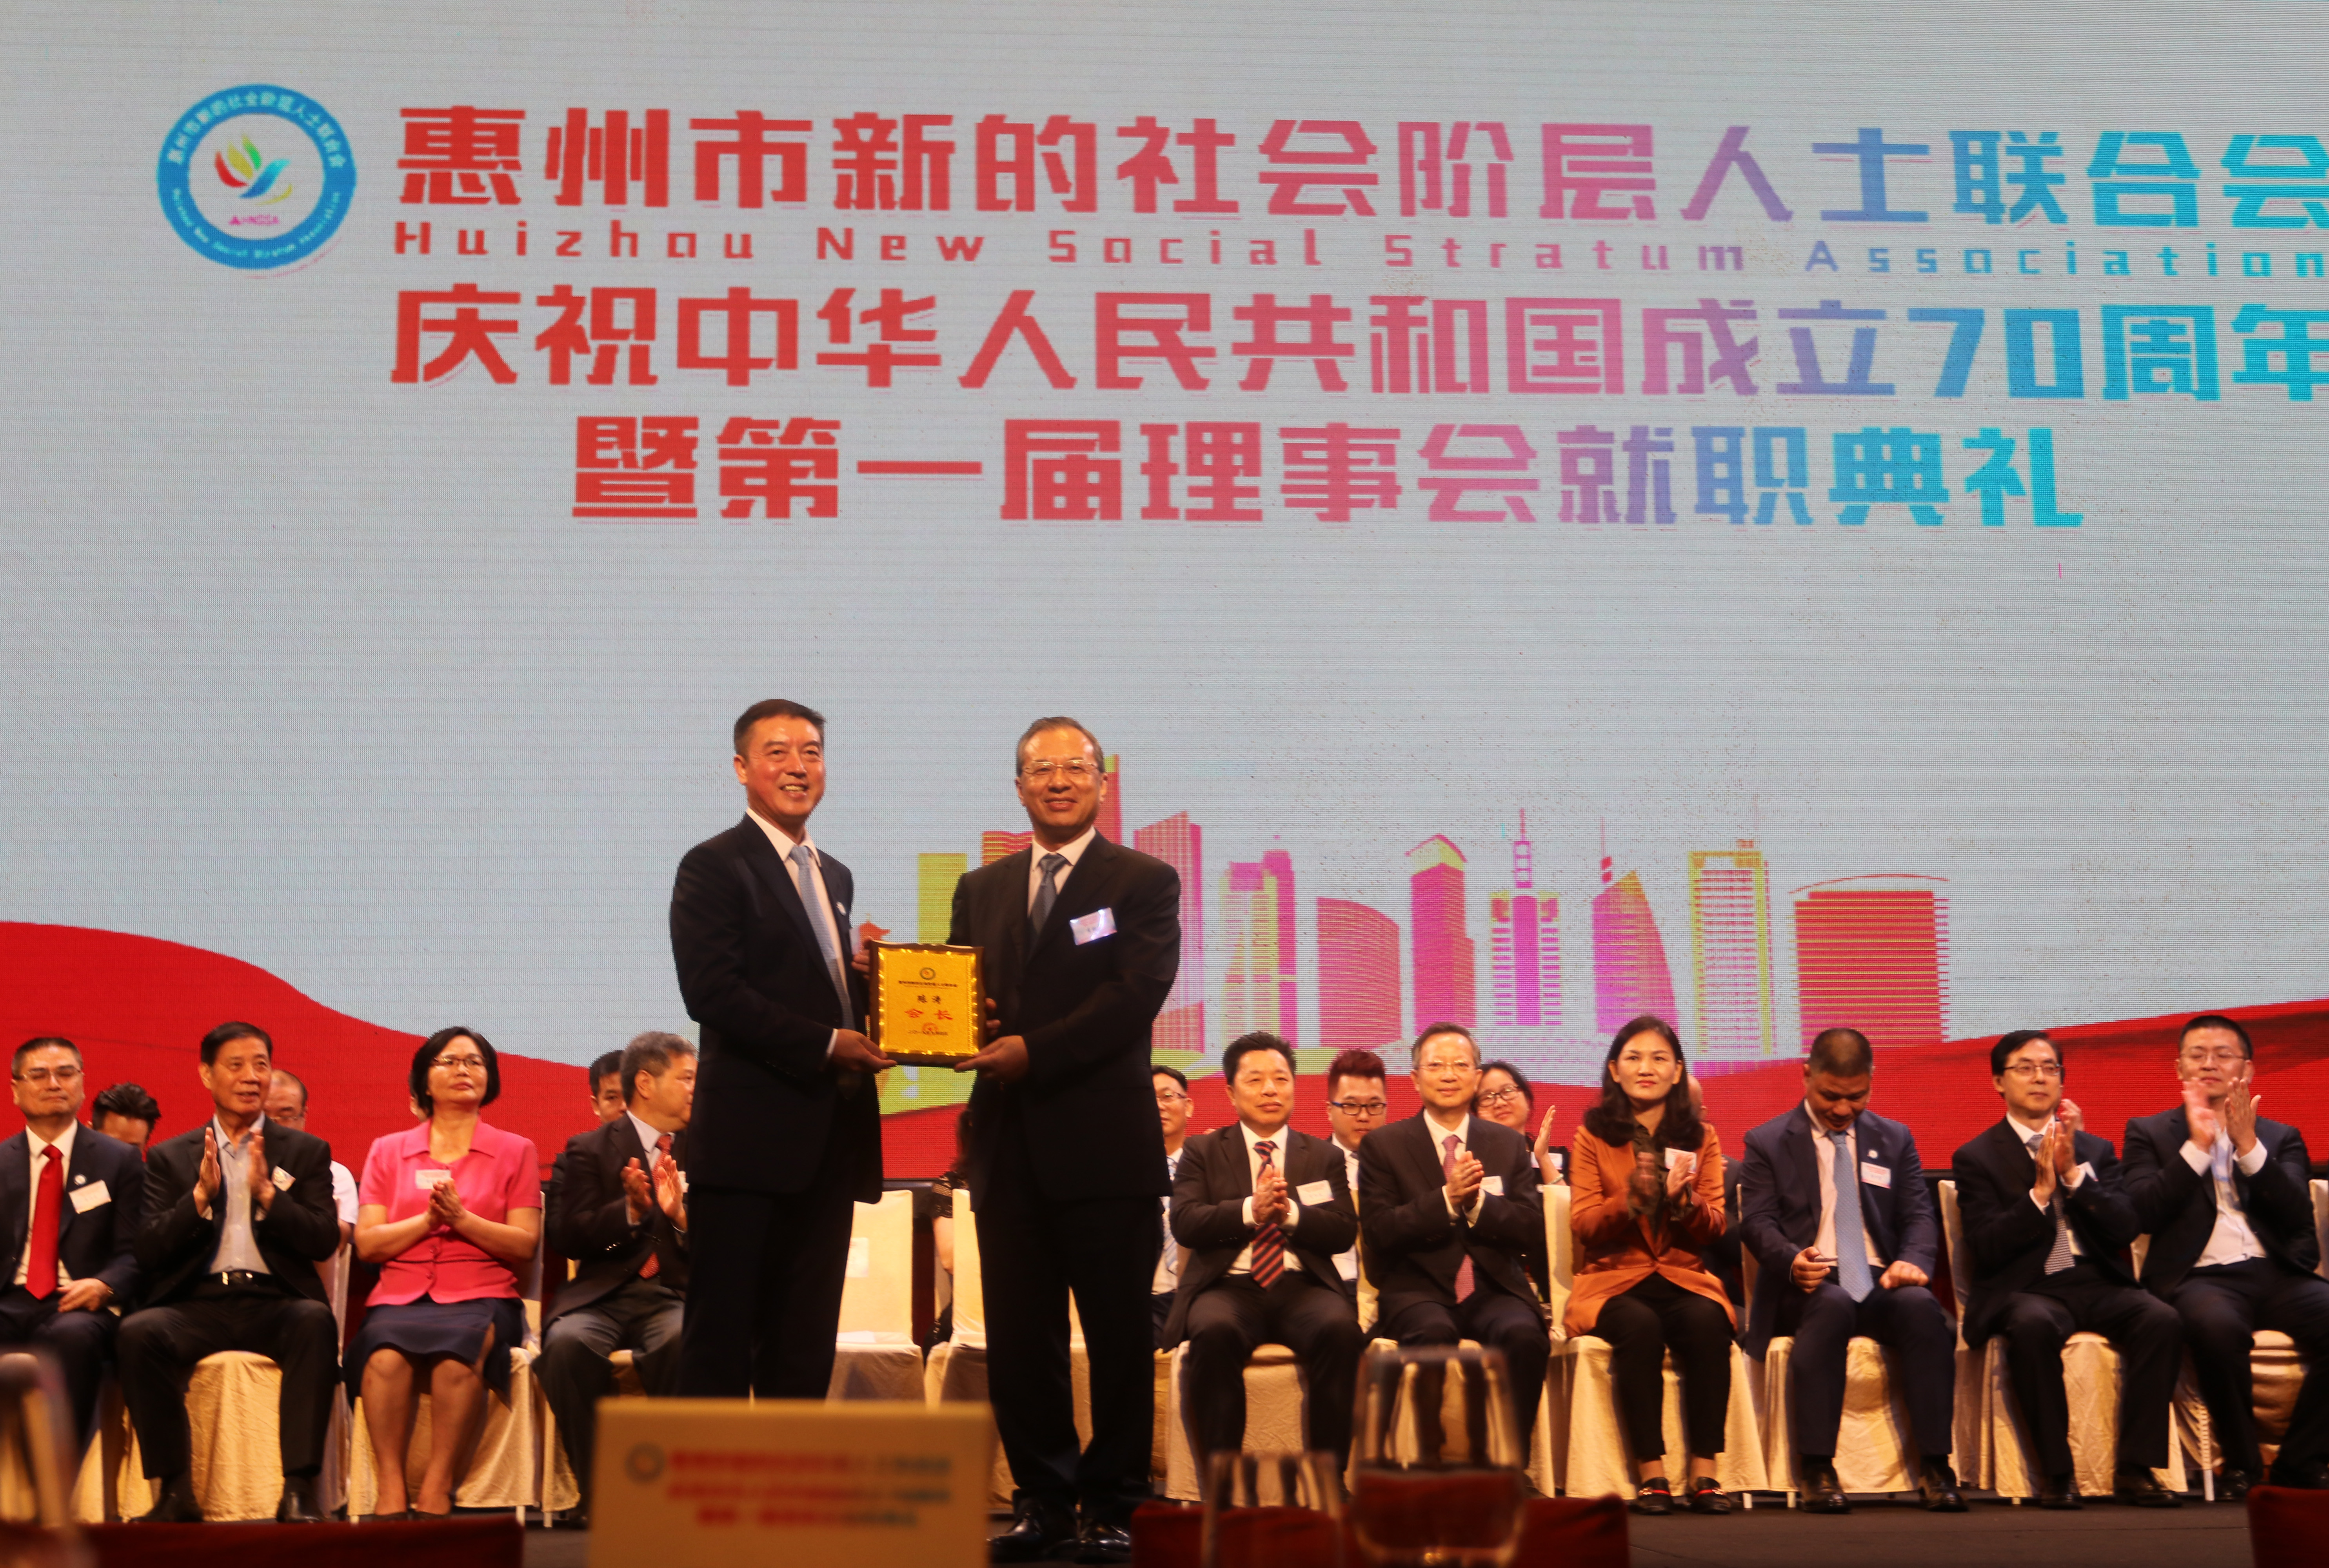 董事长陈涛中选为惠州市新的社会阶层人士联合会首任会长